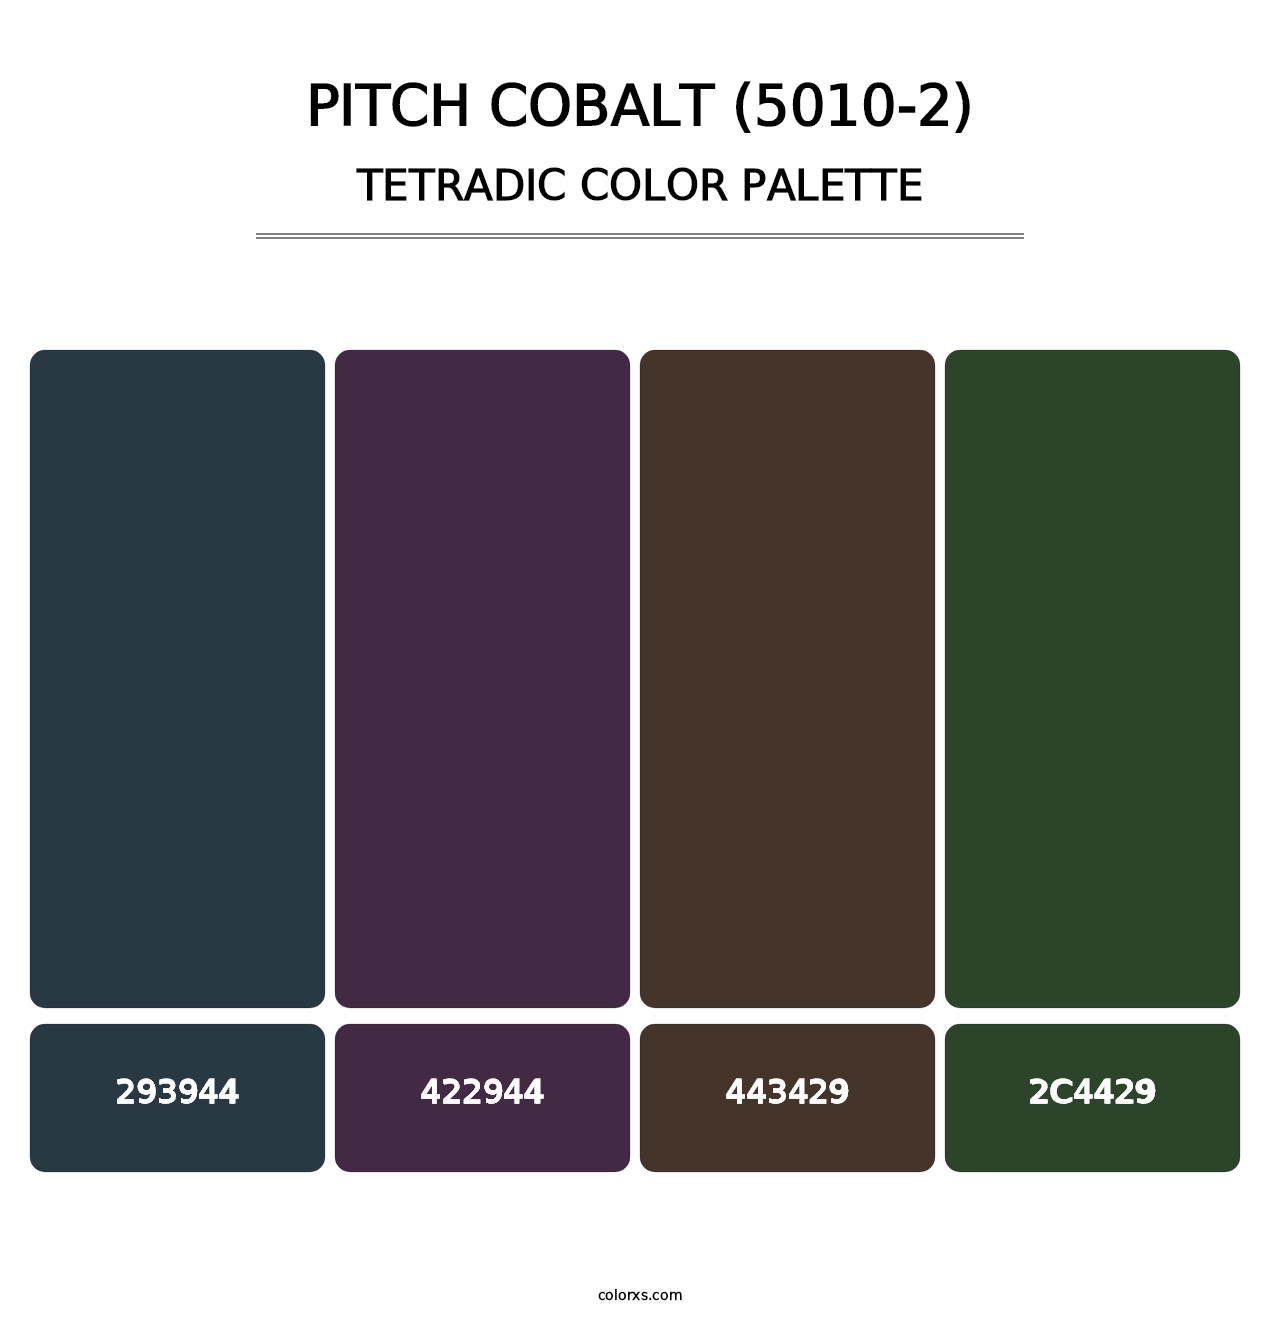 Pitch Cobalt (5010-2) - Tetradic Color Palette